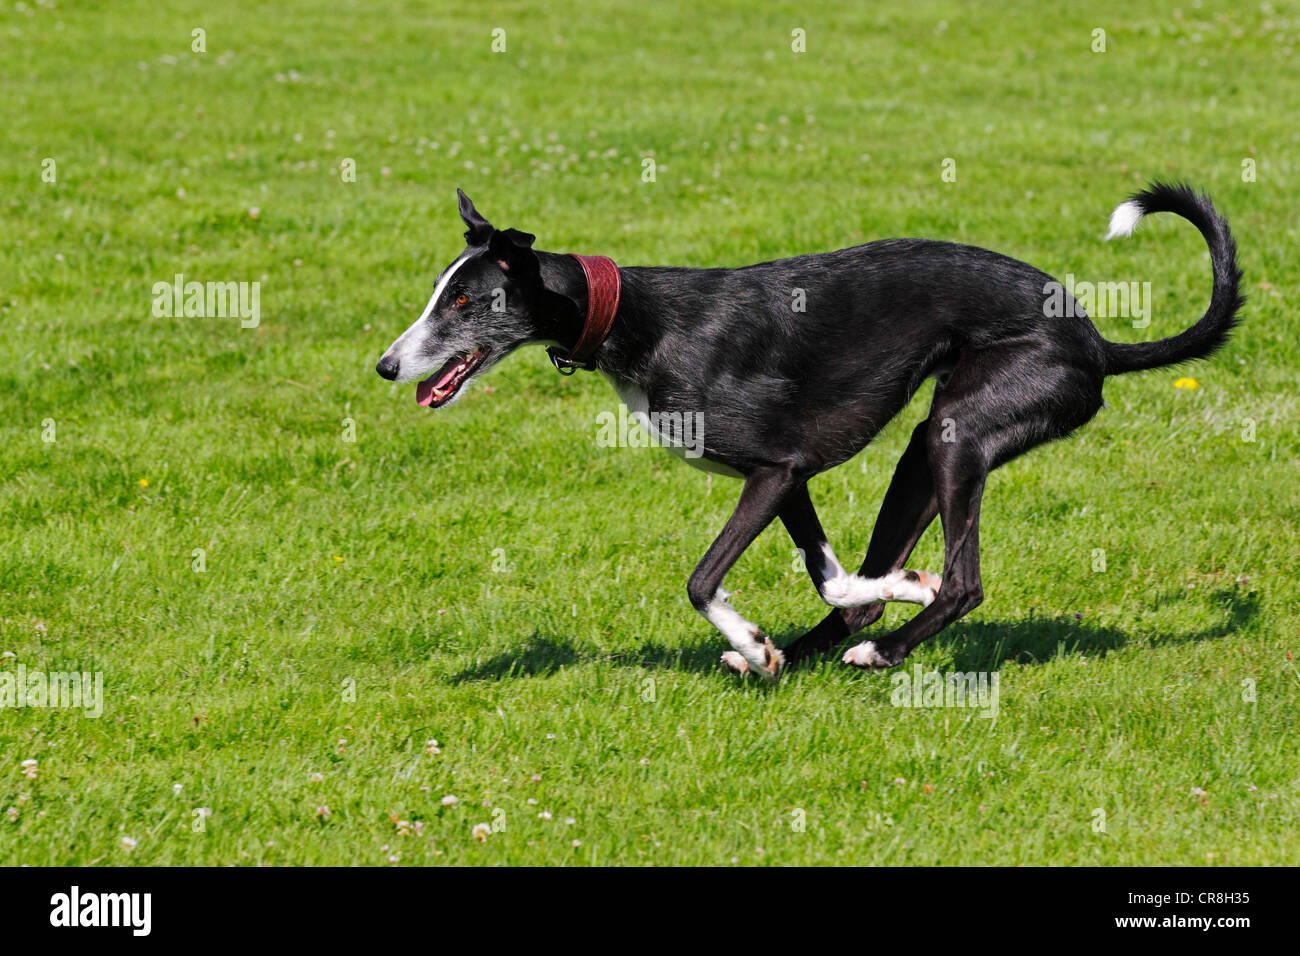 Galgo Espanol, galgo spagnolo, spagnolo Greyhound (Canis lupus familiaris) in esecuzione su un coursing race course Foto Stock